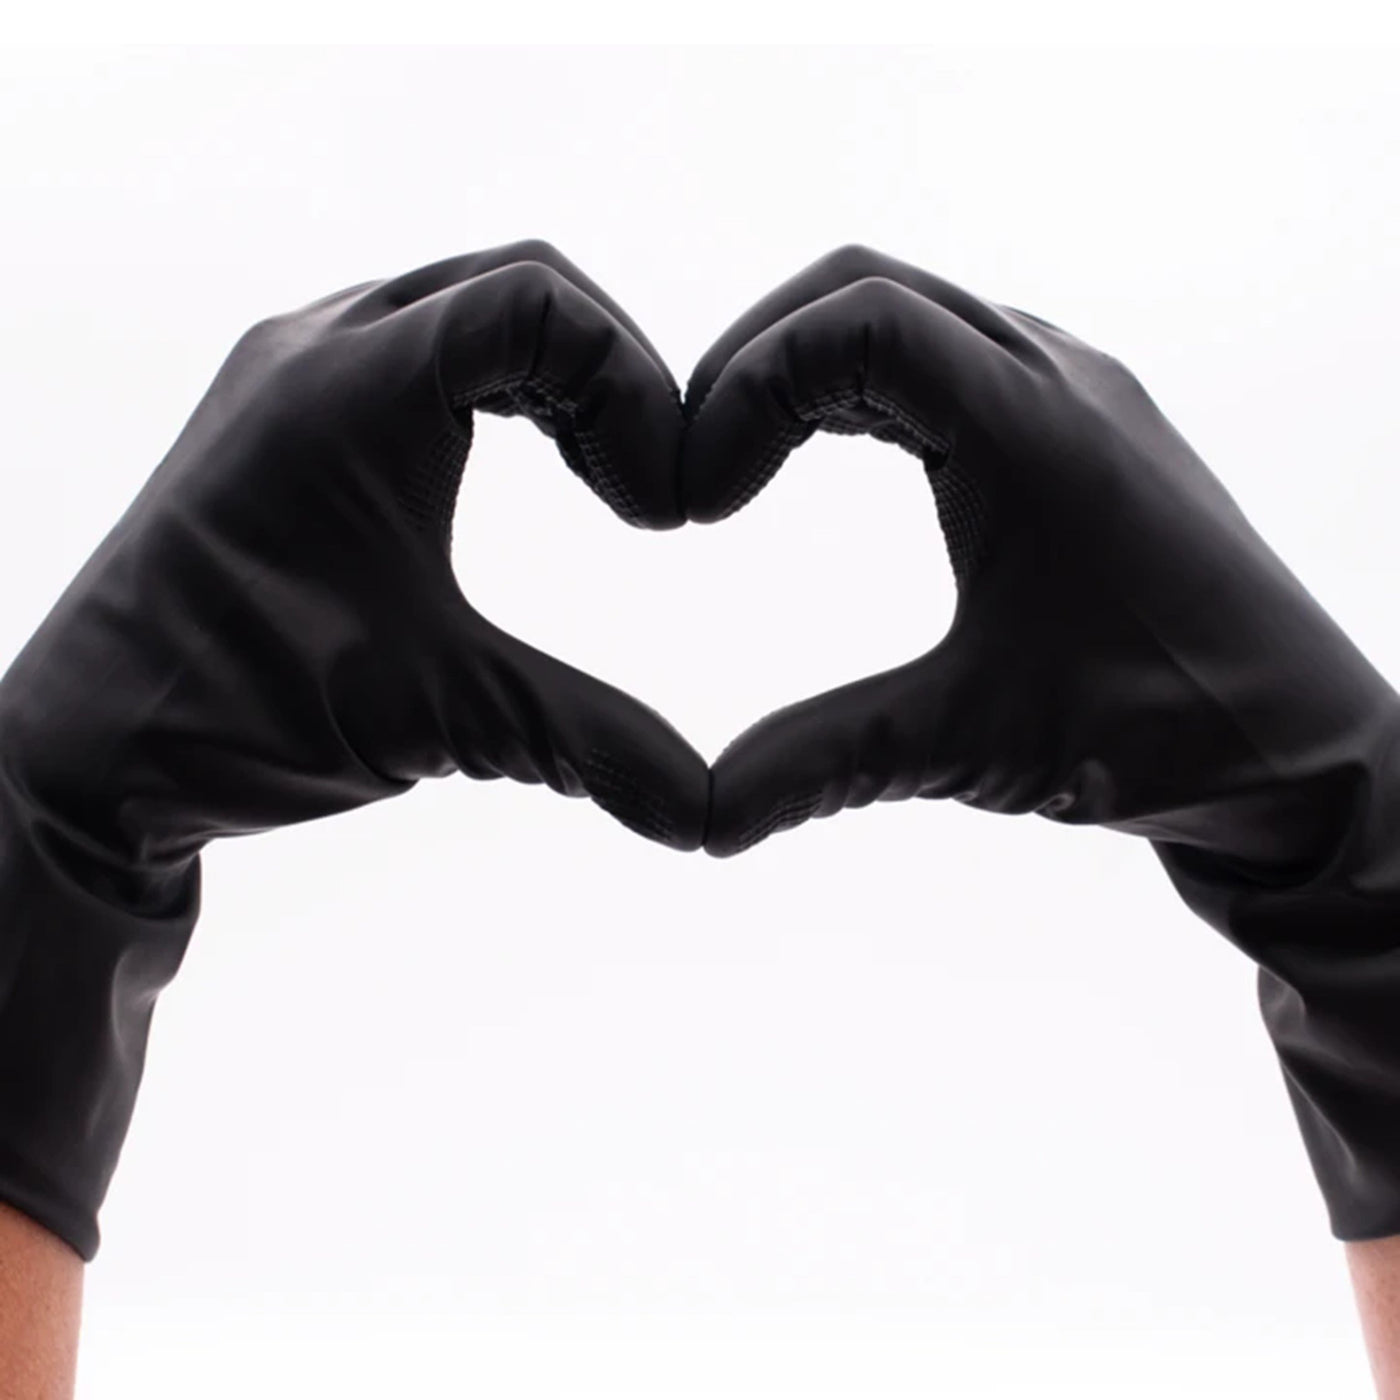 Premium Grip Reusable Gloves 8ct - Medium